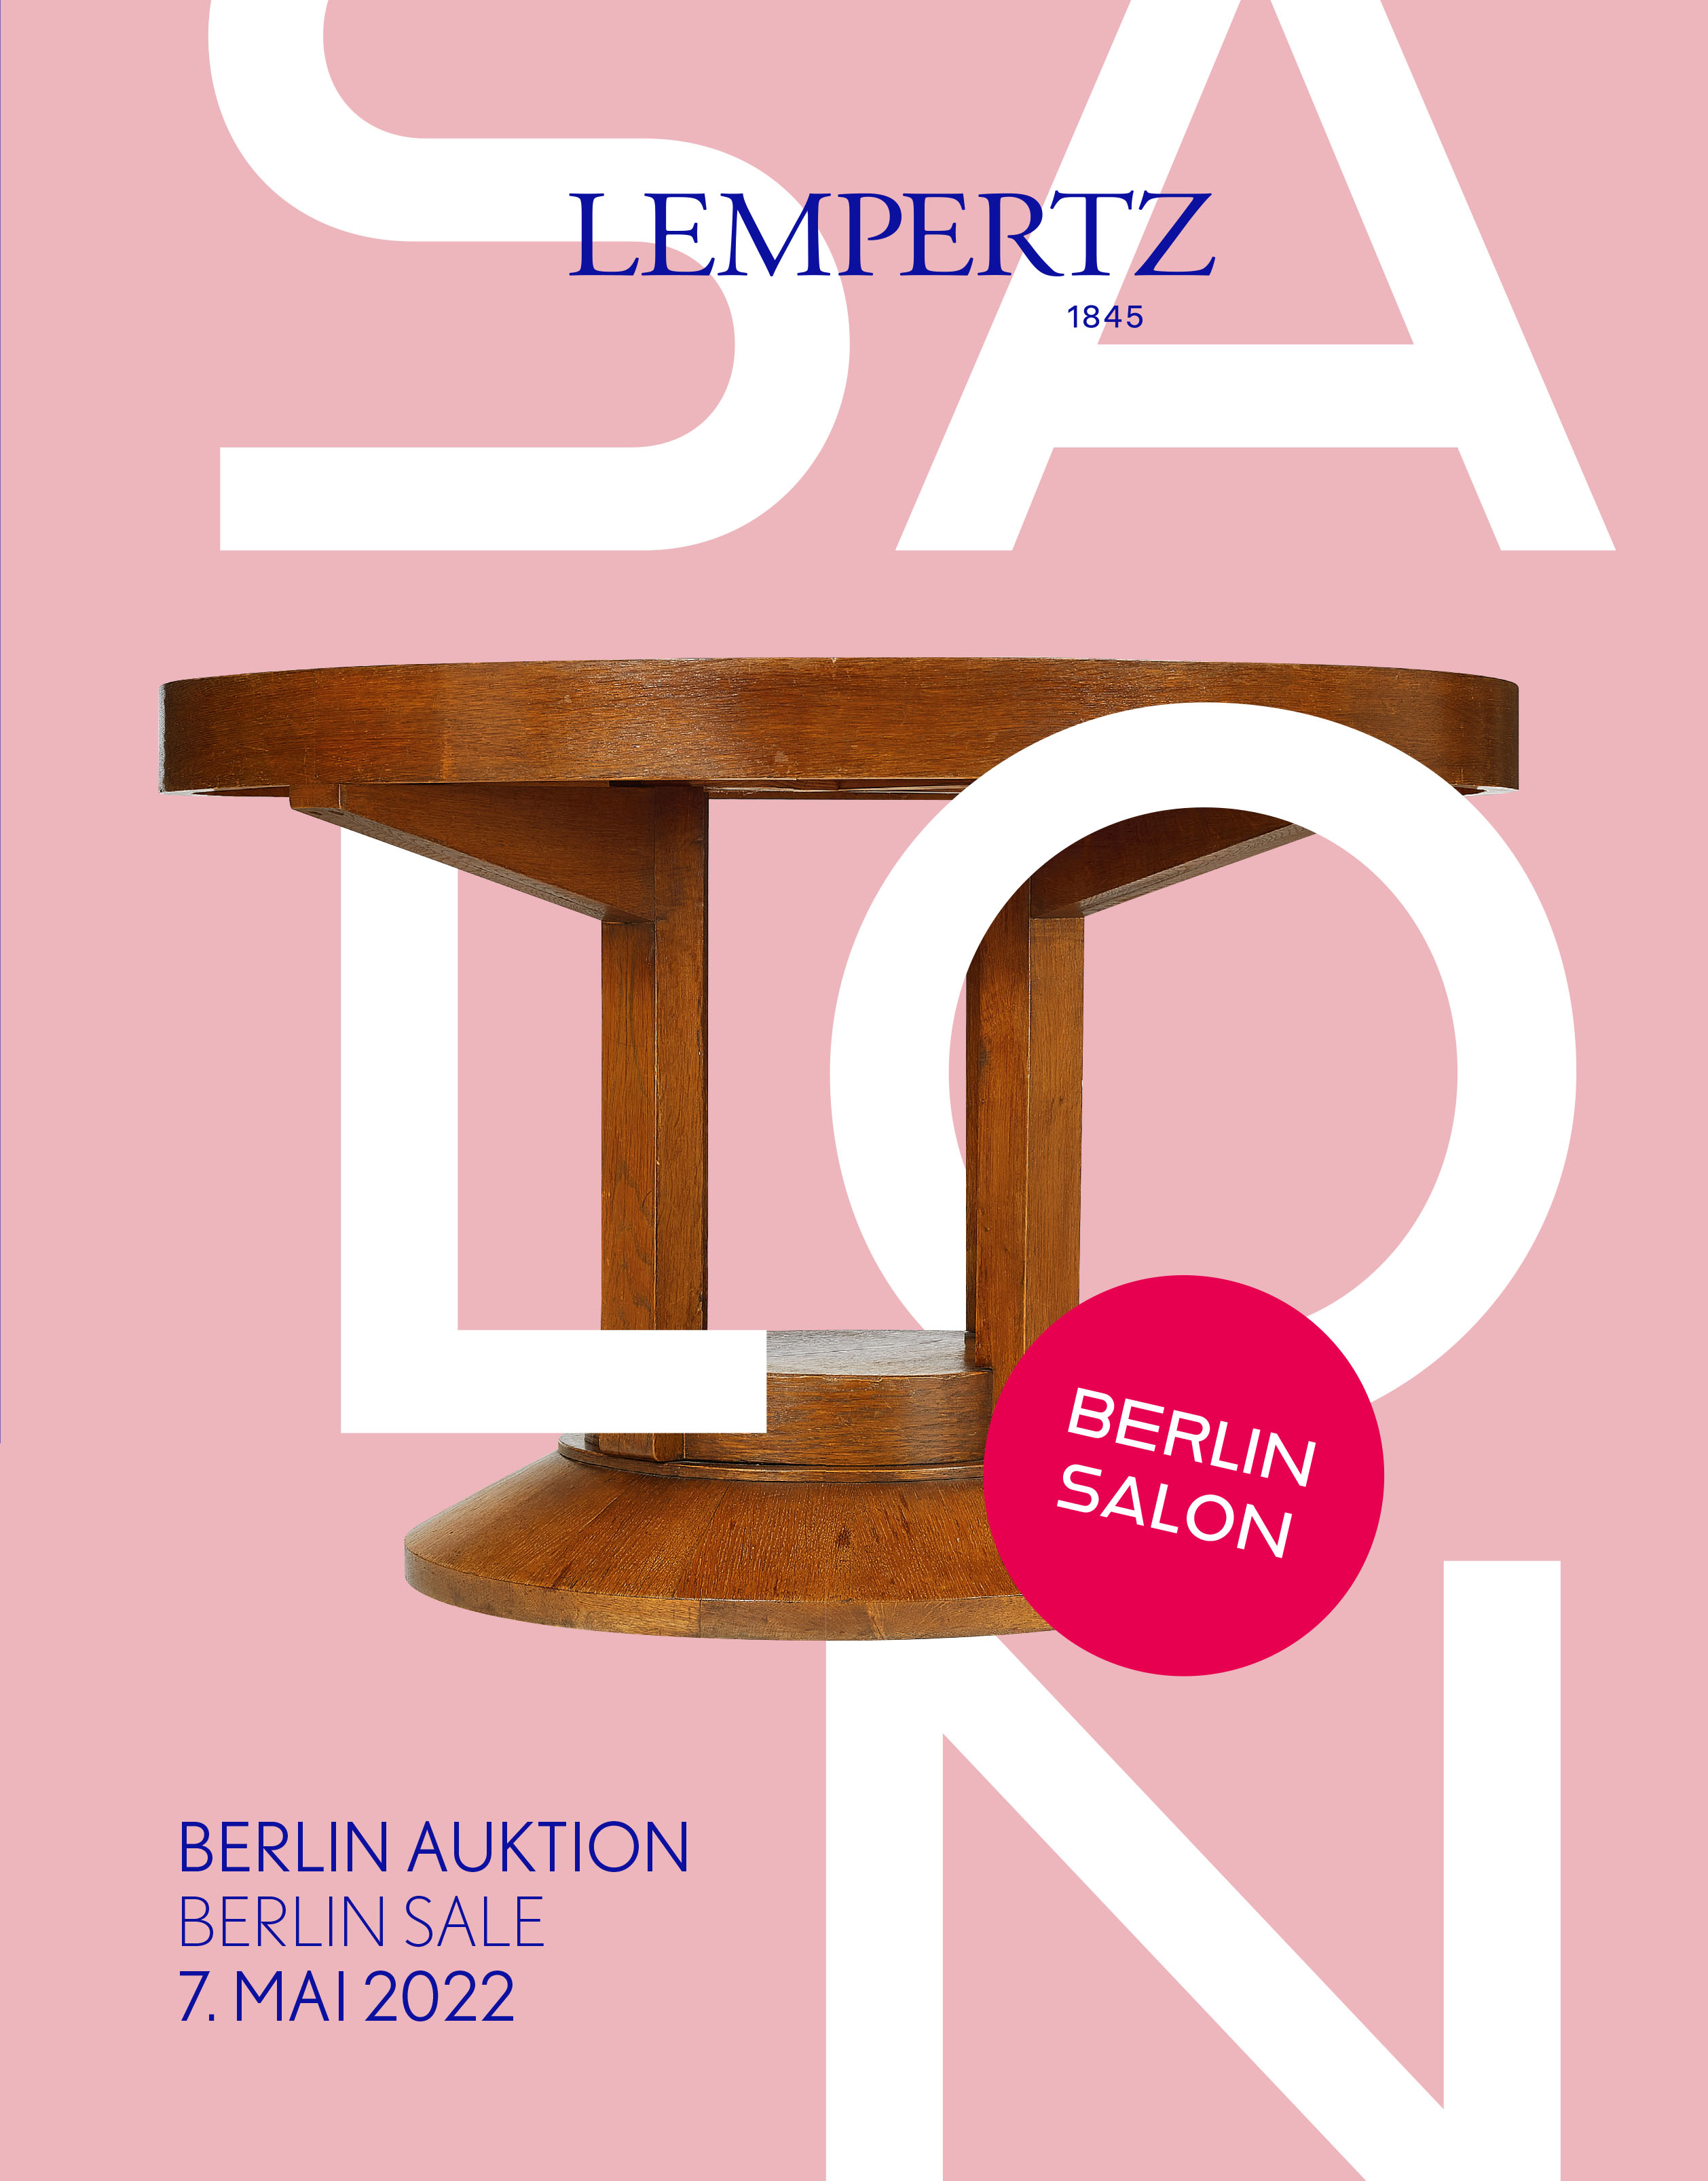 Auktionskatalog - Berlin Auktion Salon - Online Katalog - Auktion 1193 – Ersteigern Sie hochwertige Kunst in der nächsten Lempertz-Auktion!